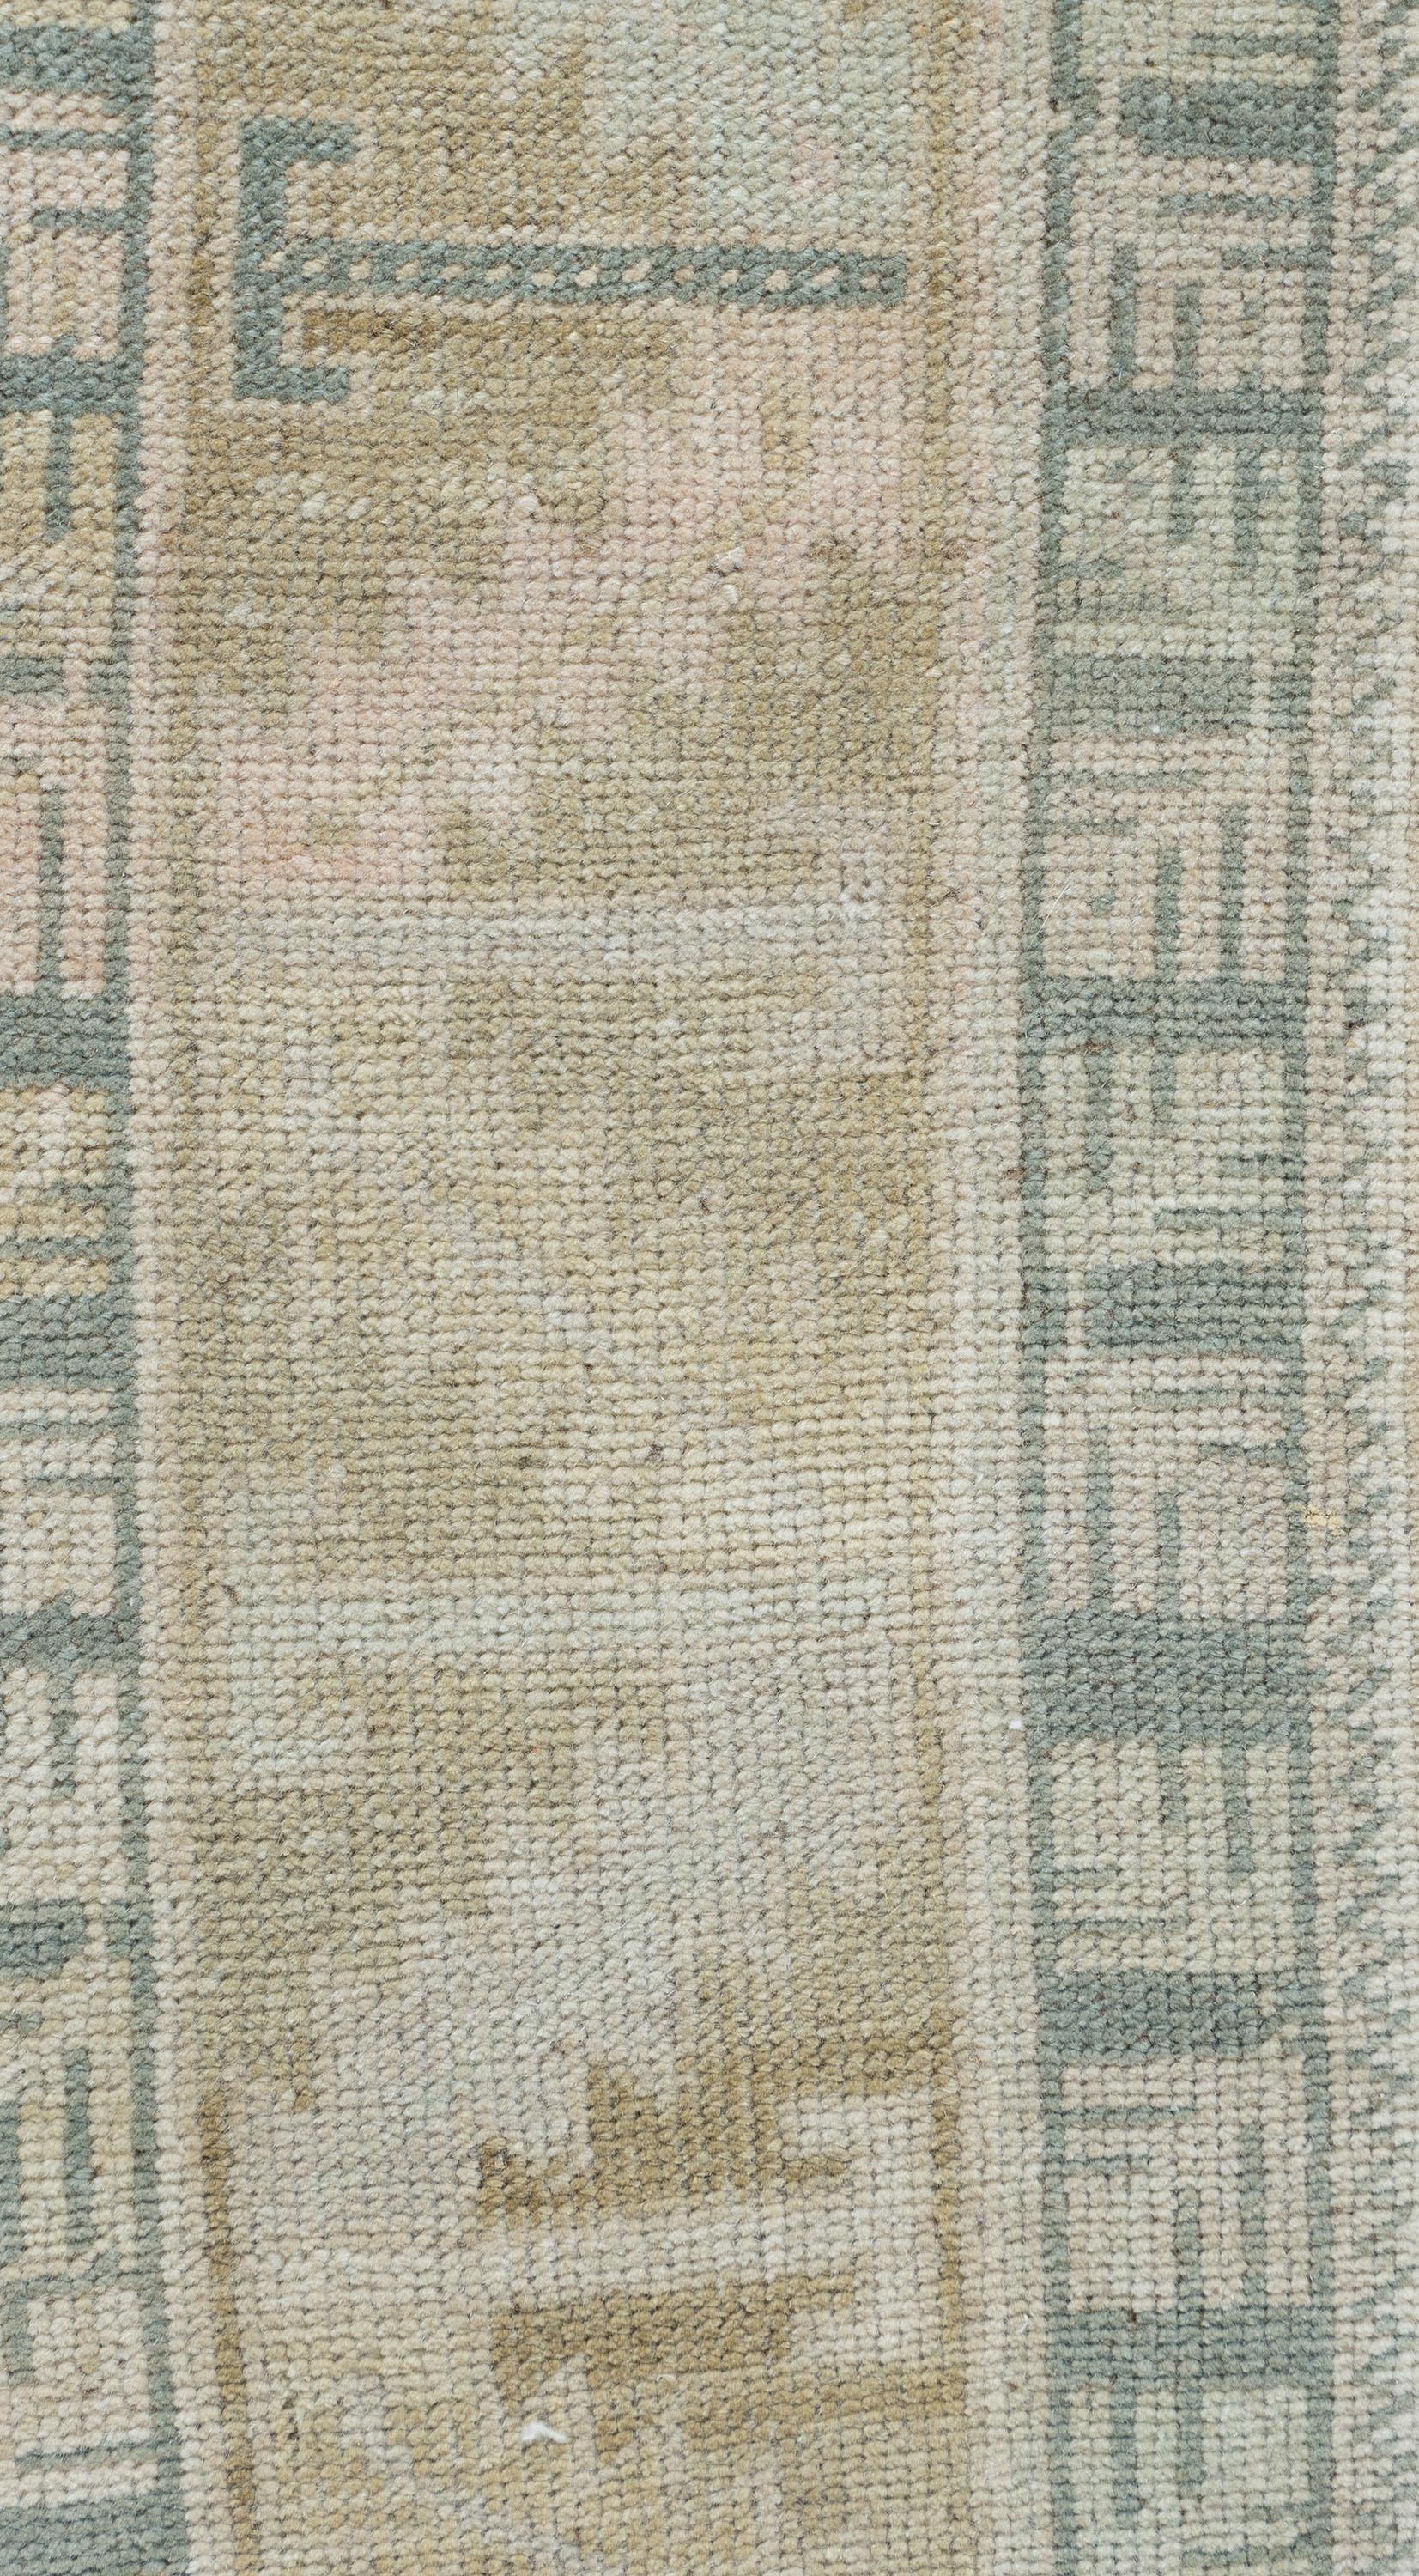 Tapis Oushak turc vintage 5'9 X 10'7. Ces tapis attrayants conviennent à une grande variété d'endroits, mais l'effet significatif des Oushaks est qu'ils rassemblent l'espace, le rendant confortable et chaleureux. La technique artistique de tissage